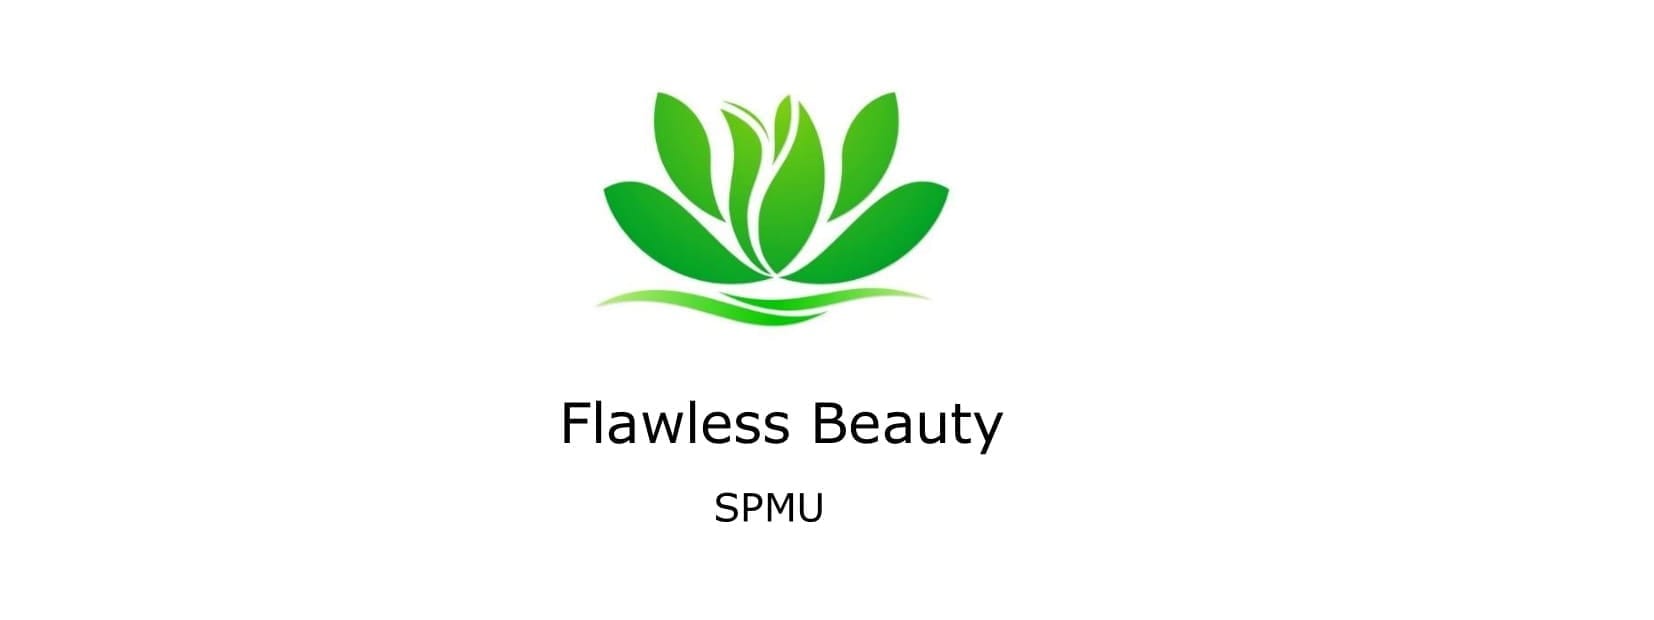 Flawless Beauty SPMU